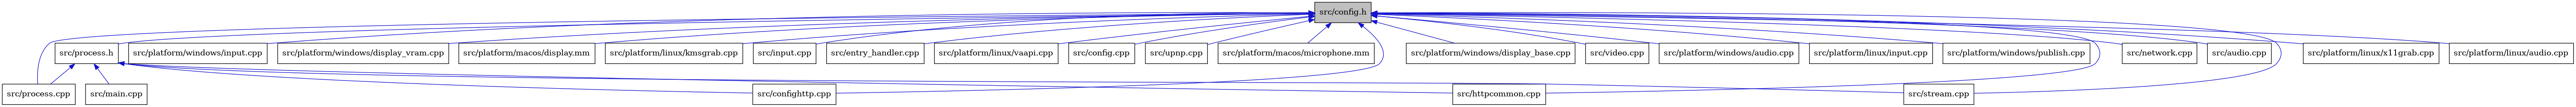 digraph {
    graph [bgcolor="#00000000"]
    node [shape=rectangle style=filled fillcolor="#FFFFFF" font=Helvetica padding=2]
    edge [color="#1414CE"]
    "22" [label="src/process.h" tooltip="src/process.h"]
    "23" [label="src/main.cpp" tooltip="src/main.cpp"]
    "19" [label="src/platform/windows/input.cpp" tooltip="src/platform/windows/input.cpp"]
    "18" [label="src/platform/windows/display_vram.cpp" tooltip="src/platform/windows/display_vram.cpp"]
    "14" [label="src/platform/macos/display.mm" tooltip="src/platform/macos/display.mm"]
    "10" [label="src/platform/linux/kmsgrab.cpp" tooltip="src/platform/linux/kmsgrab.cpp"]
    "8" [label="src/input.cpp" tooltip="src/input.cpp"]
    "5" [label="src/entry_handler.cpp" tooltip="src/entry_handler.cpp"]
    "21" [label="src/process.cpp" tooltip="src/process.cpp"]
    "12" [label="src/platform/linux/vaapi.cpp" tooltip="src/platform/linux/vaapi.cpp"]
    "1" [label="src/config.h" tooltip="src/config.h" fillcolor="#BFBFBF"]
    "3" [label="src/config.cpp" tooltip="src/config.cpp"]
    "25" [label="src/upnp.cpp" tooltip="src/upnp.cpp"]
    "15" [label="src/platform/macos/microphone.mm" tooltip="src/platform/macos/microphone.mm"]
    "4" [label="src/confighttp.cpp" tooltip="src/confighttp.cpp"]
    "17" [label="src/platform/windows/display_base.cpp" tooltip="src/platform/windows/display_base.cpp"]
    "26" [label="src/video.cpp" tooltip="src/video.cpp"]
    "16" [label="src/platform/windows/audio.cpp" tooltip="src/platform/windows/audio.cpp"]
    "11" [label="src/platform/linux/input.cpp" tooltip="src/platform/linux/input.cpp"]
    "20" [label="src/platform/windows/publish.cpp" tooltip="src/platform/windows/publish.cpp"]
    "6" [label="src/httpcommon.cpp" tooltip="src/httpcommon.cpp"]
    "7" [label="src/network.cpp" tooltip="src/network.cpp"]
    "2" [label="src/audio.cpp" tooltip="src/audio.cpp"]
    "24" [label="src/stream.cpp" tooltip="src/stream.cpp"]
    "13" [label="src/platform/linux/x11grab.cpp" tooltip="src/platform/linux/x11grab.cpp"]
    "9" [label="src/platform/linux/audio.cpp" tooltip="src/platform/linux/audio.cpp"]
    "22" -> "4" [dir=back tooltip="include"]
    "22" -> "6" [dir=back tooltip="include"]
    "22" -> "23" [dir=back tooltip="include"]
    "22" -> "21" [dir=back tooltip="include"]
    "22" -> "24" [dir=back tooltip="include"]
    "1" -> "2" [dir=back tooltip="include"]
    "1" -> "3" [dir=back tooltip="include"]
    "1" -> "4" [dir=back tooltip="include"]
    "1" -> "5" [dir=back tooltip="include"]
    "1" -> "6" [dir=back tooltip="include"]
    "1" -> "7" [dir=back tooltip="include"]
    "1" -> "8" [dir=back tooltip="include"]
    "1" -> "9" [dir=back tooltip="include"]
    "1" -> "10" [dir=back tooltip="include"]
    "1" -> "11" [dir=back tooltip="include"]
    "1" -> "12" [dir=back tooltip="include"]
    "1" -> "13" [dir=back tooltip="include"]
    "1" -> "14" [dir=back tooltip="include"]
    "1" -> "15" [dir=back tooltip="include"]
    "1" -> "16" [dir=back tooltip="include"]
    "1" -> "17" [dir=back tooltip="include"]
    "1" -> "18" [dir=back tooltip="include"]
    "1" -> "19" [dir=back tooltip="include"]
    "1" -> "20" [dir=back tooltip="include"]
    "1" -> "21" [dir=back tooltip="include"]
    "1" -> "22" [dir=back tooltip="include"]
    "1" -> "24" [dir=back tooltip="include"]
    "1" -> "25" [dir=back tooltip="include"]
    "1" -> "26" [dir=back tooltip="include"]
}